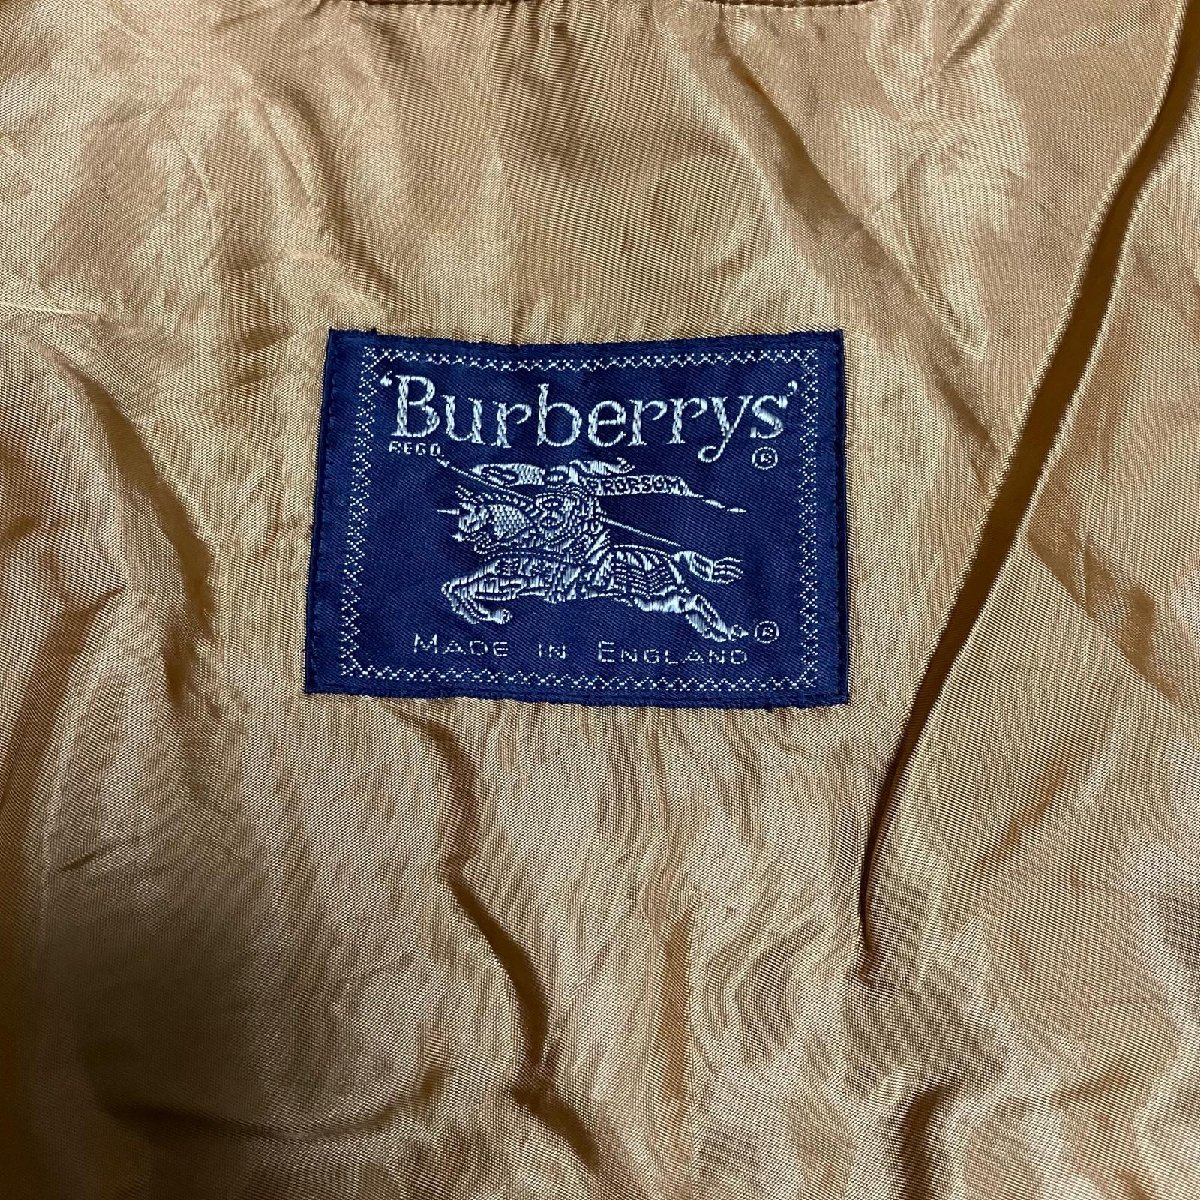 BURBERRY バーバリー Burberry's コート インナー ライナー ウール×カシミヤ ブラウン系 メンズ ※毛羽立ち.穴あき アウター_画像6